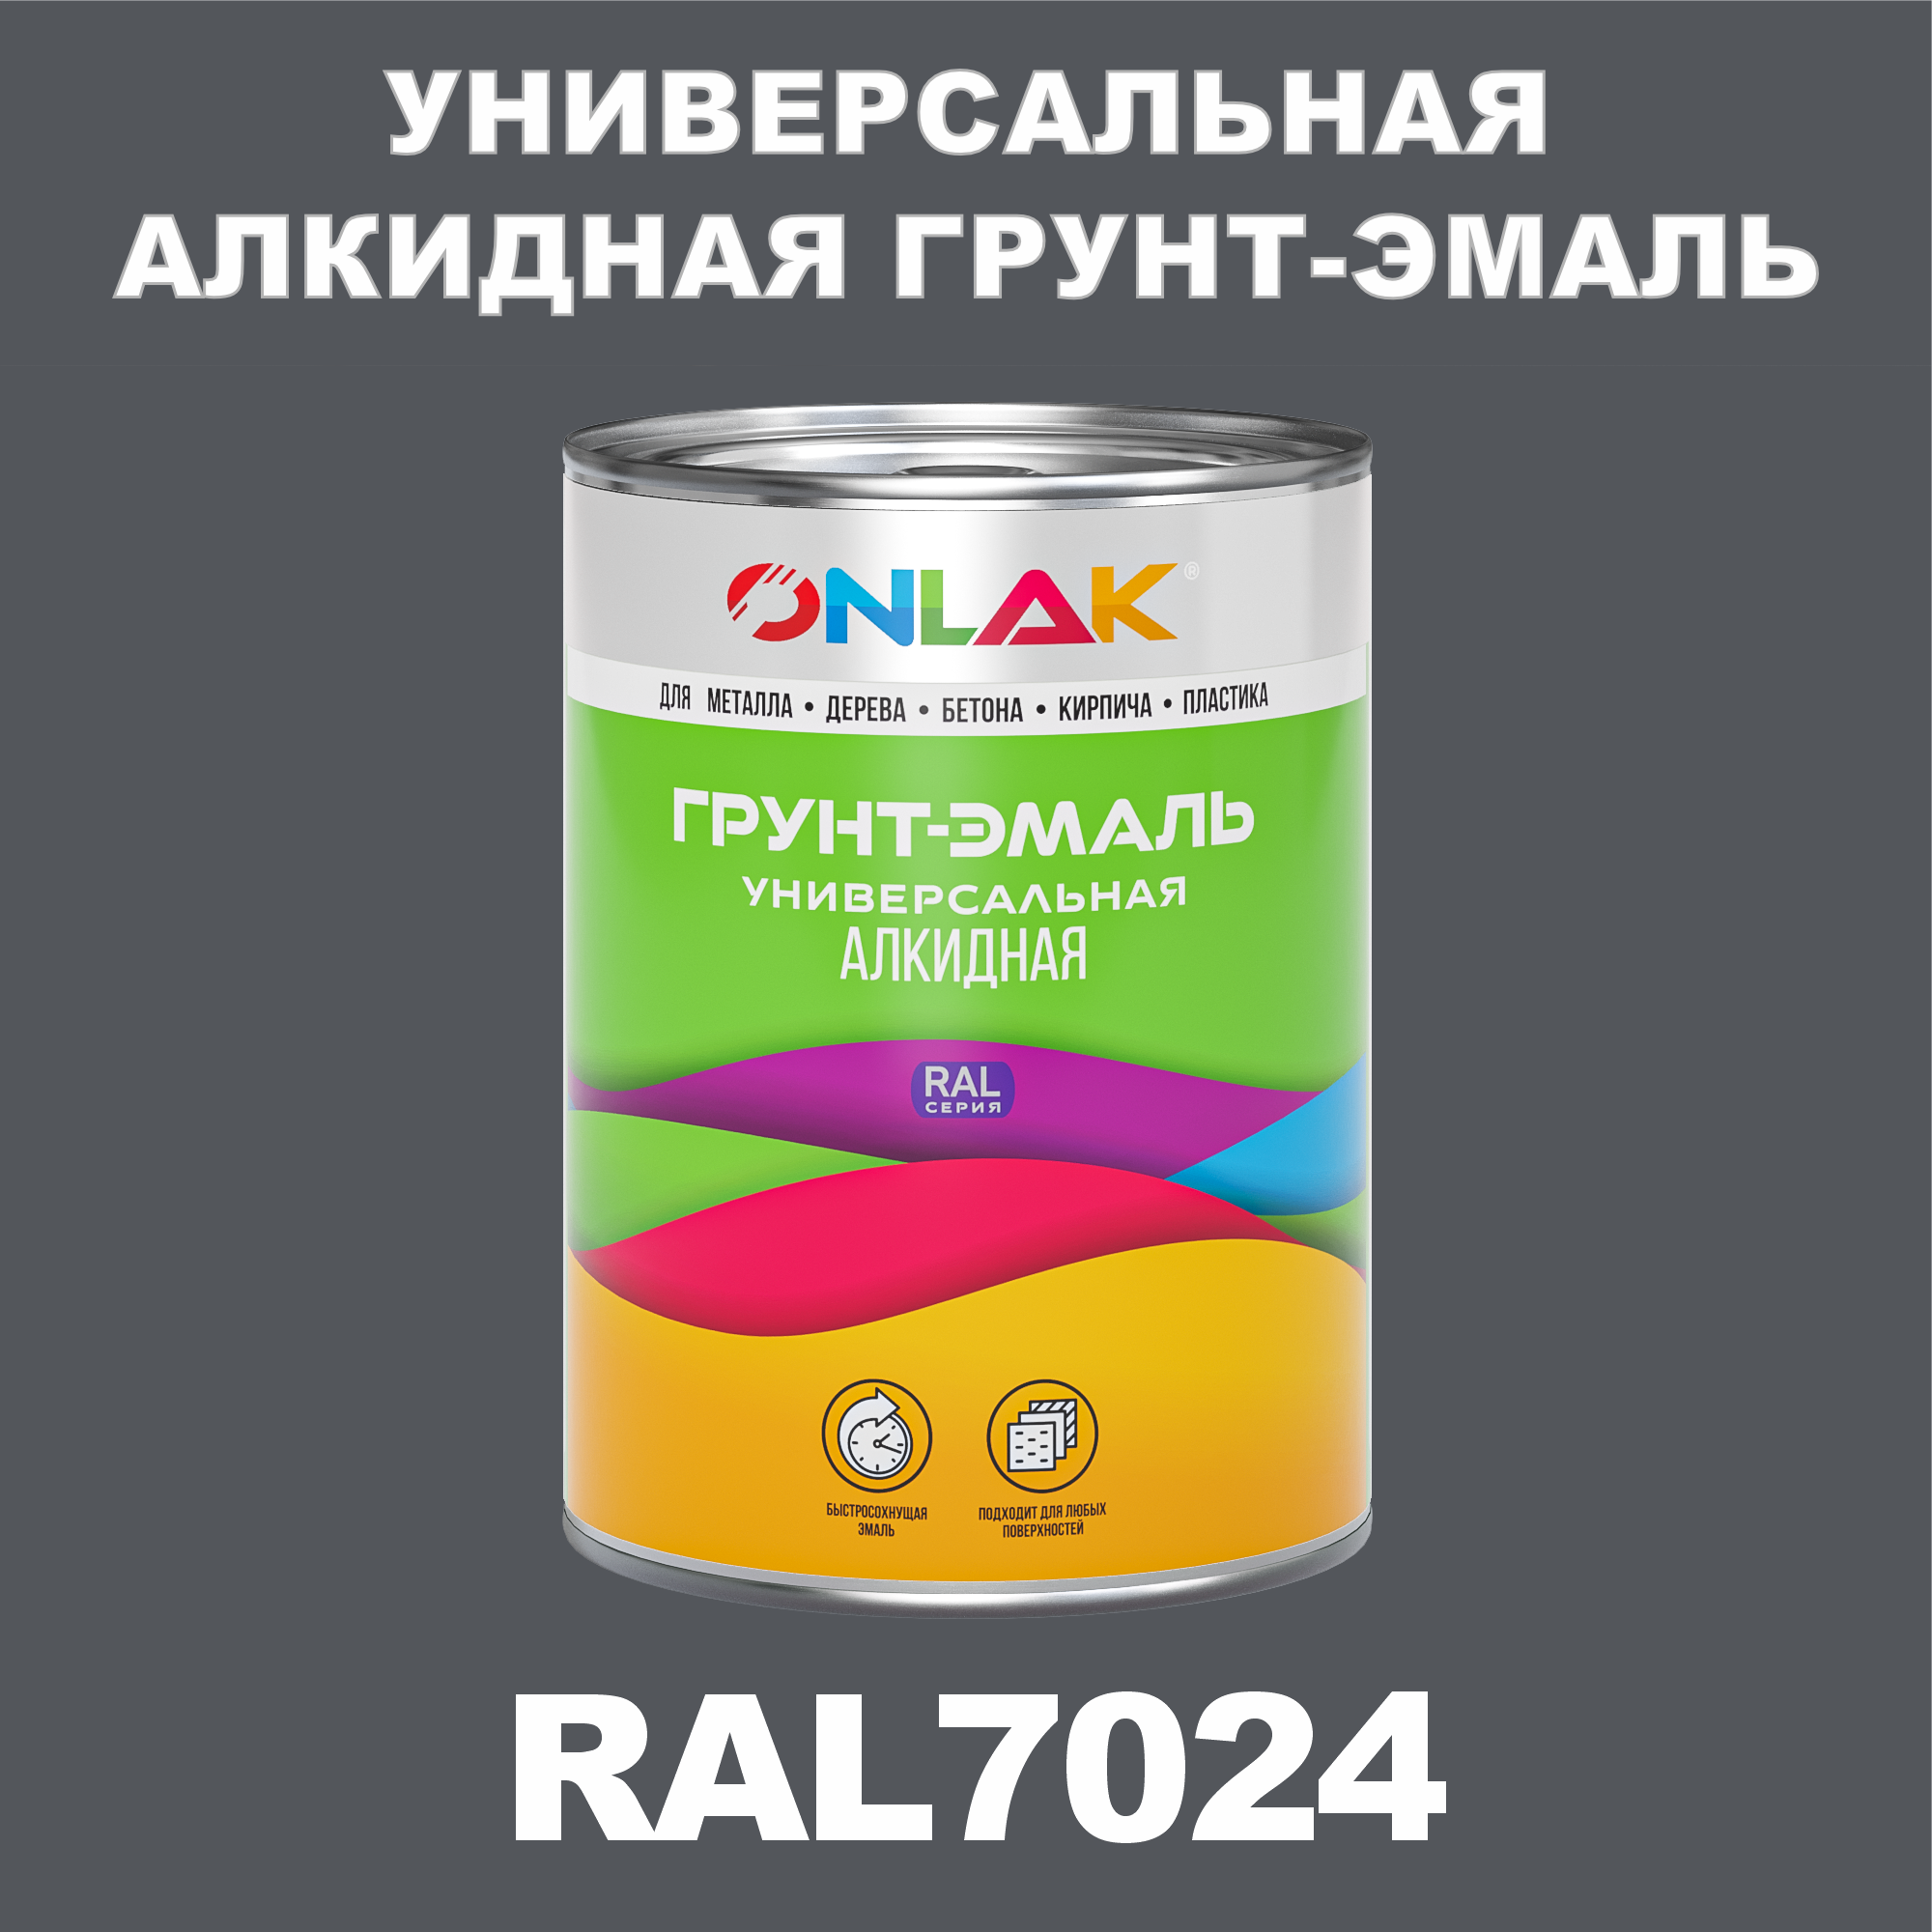 Грунт-эмаль ONLAK 1К RAL7024 антикоррозионная алкидная по металлу по ржавчине 1 кг грунт эмаль neomid по ржавчине быстросохнущая алкидная серая 0 9 кг